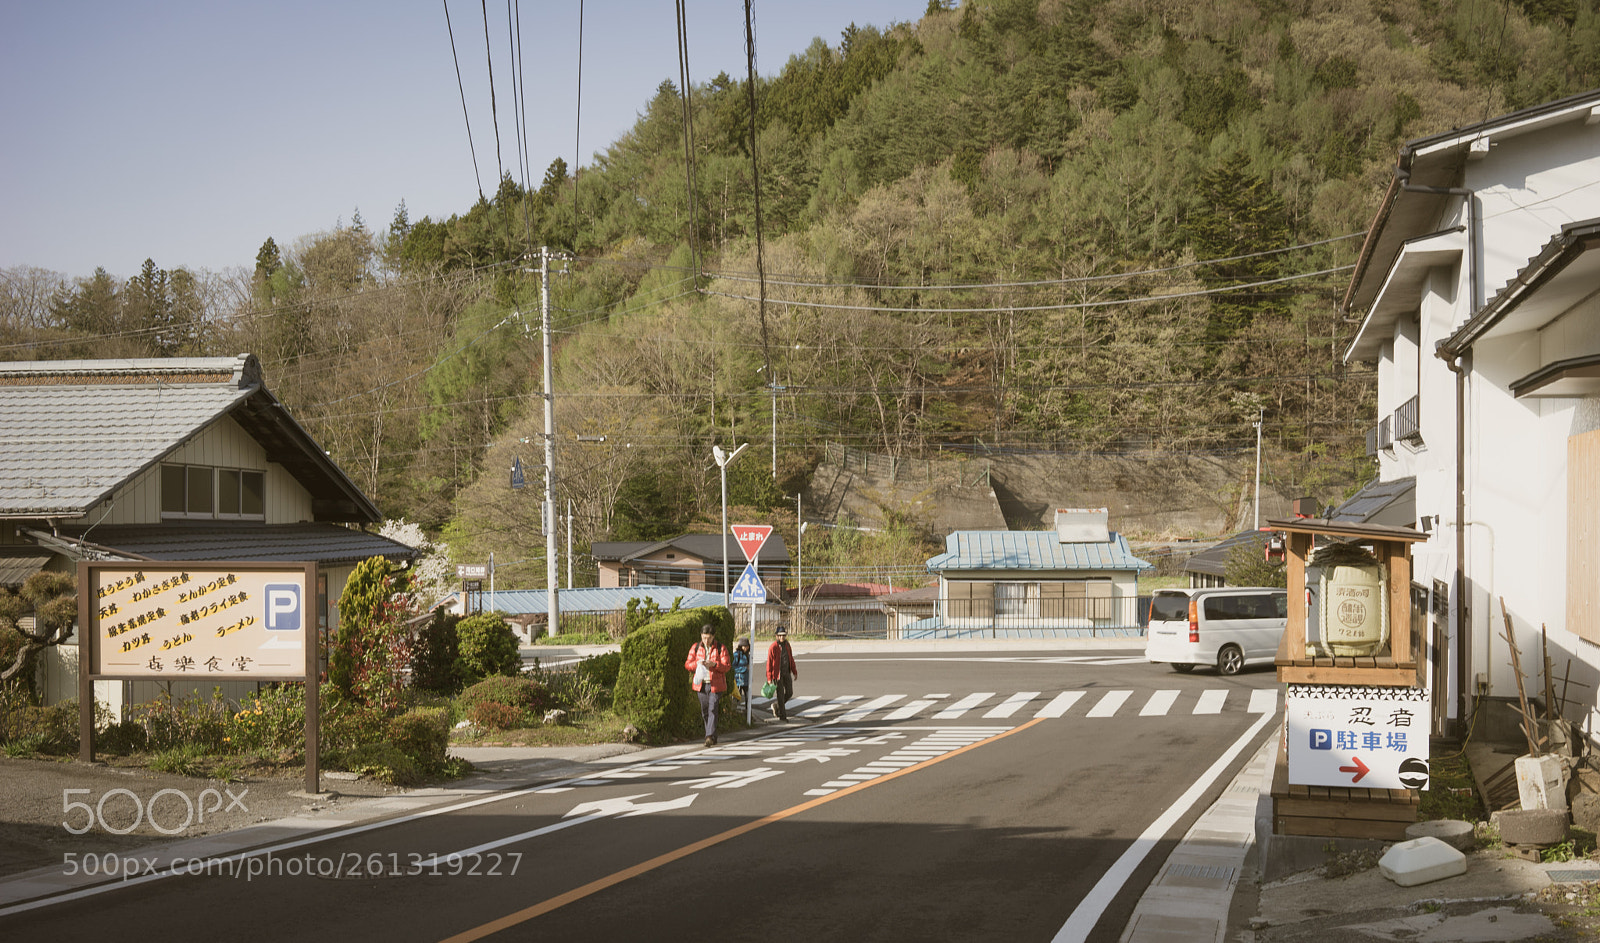 Sony a7 sample photo. Roads at fujikawaguchiko-machi photography